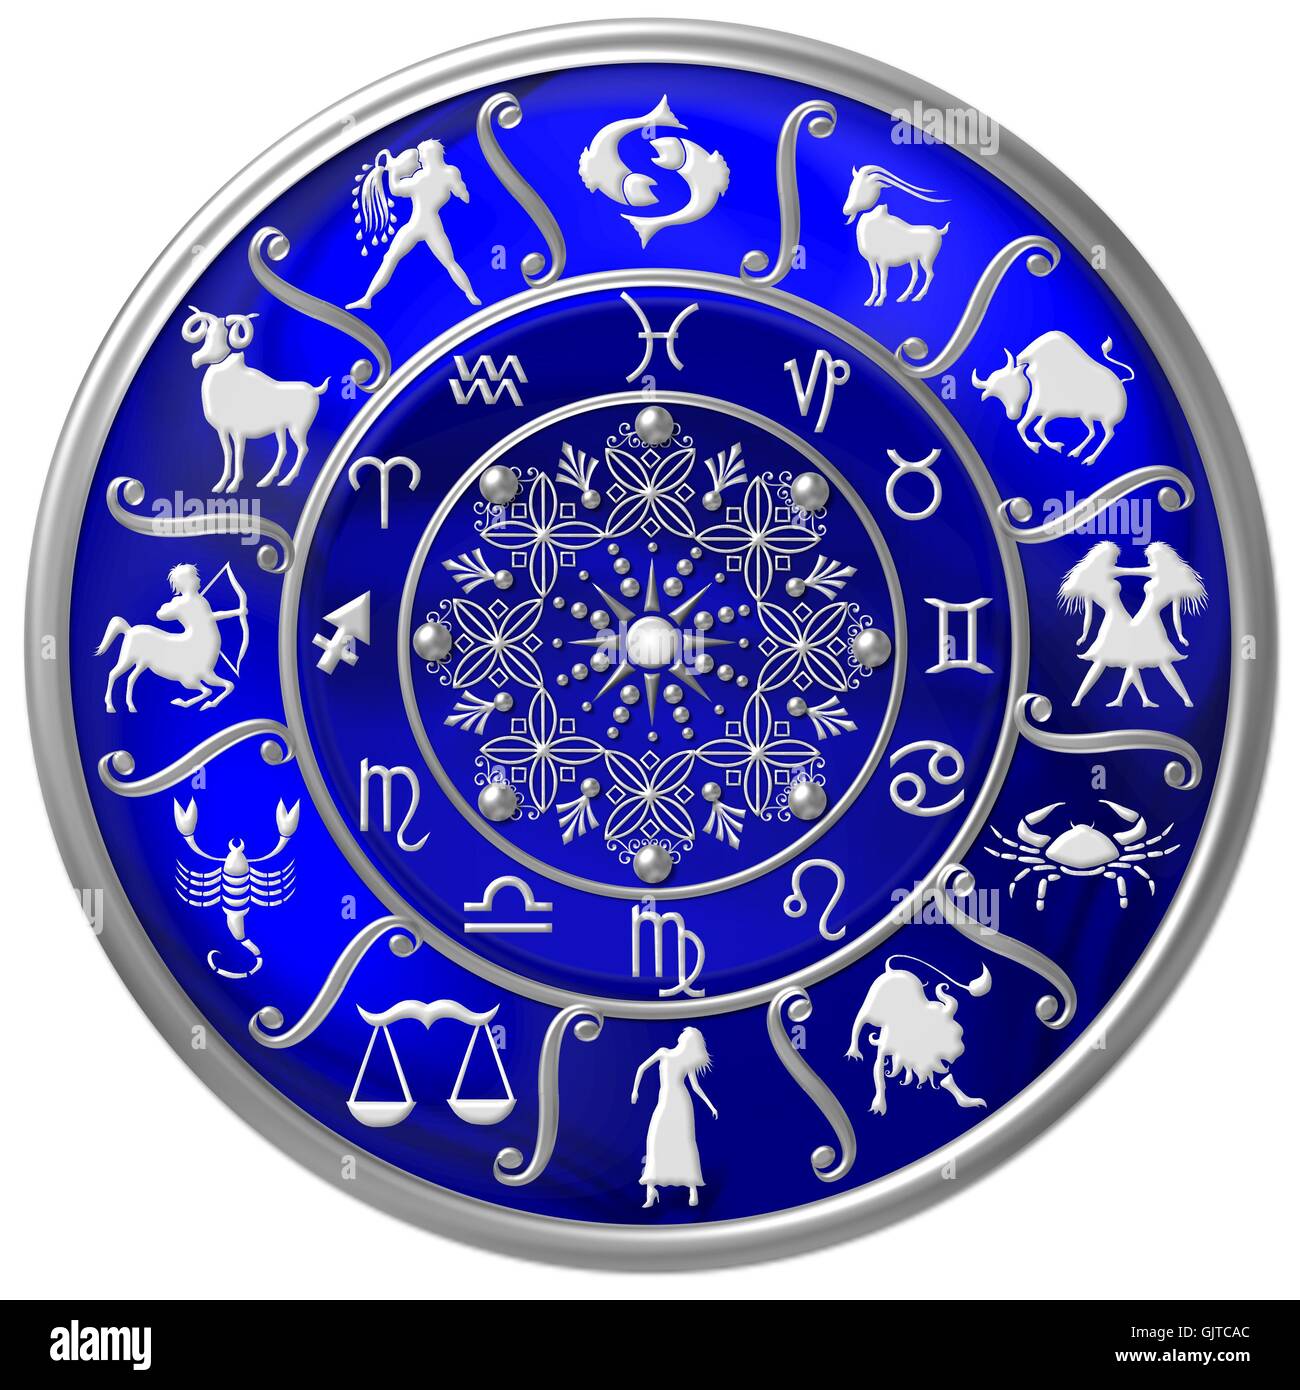 blue horoscope wheel with zodiac symbols Stock Photo